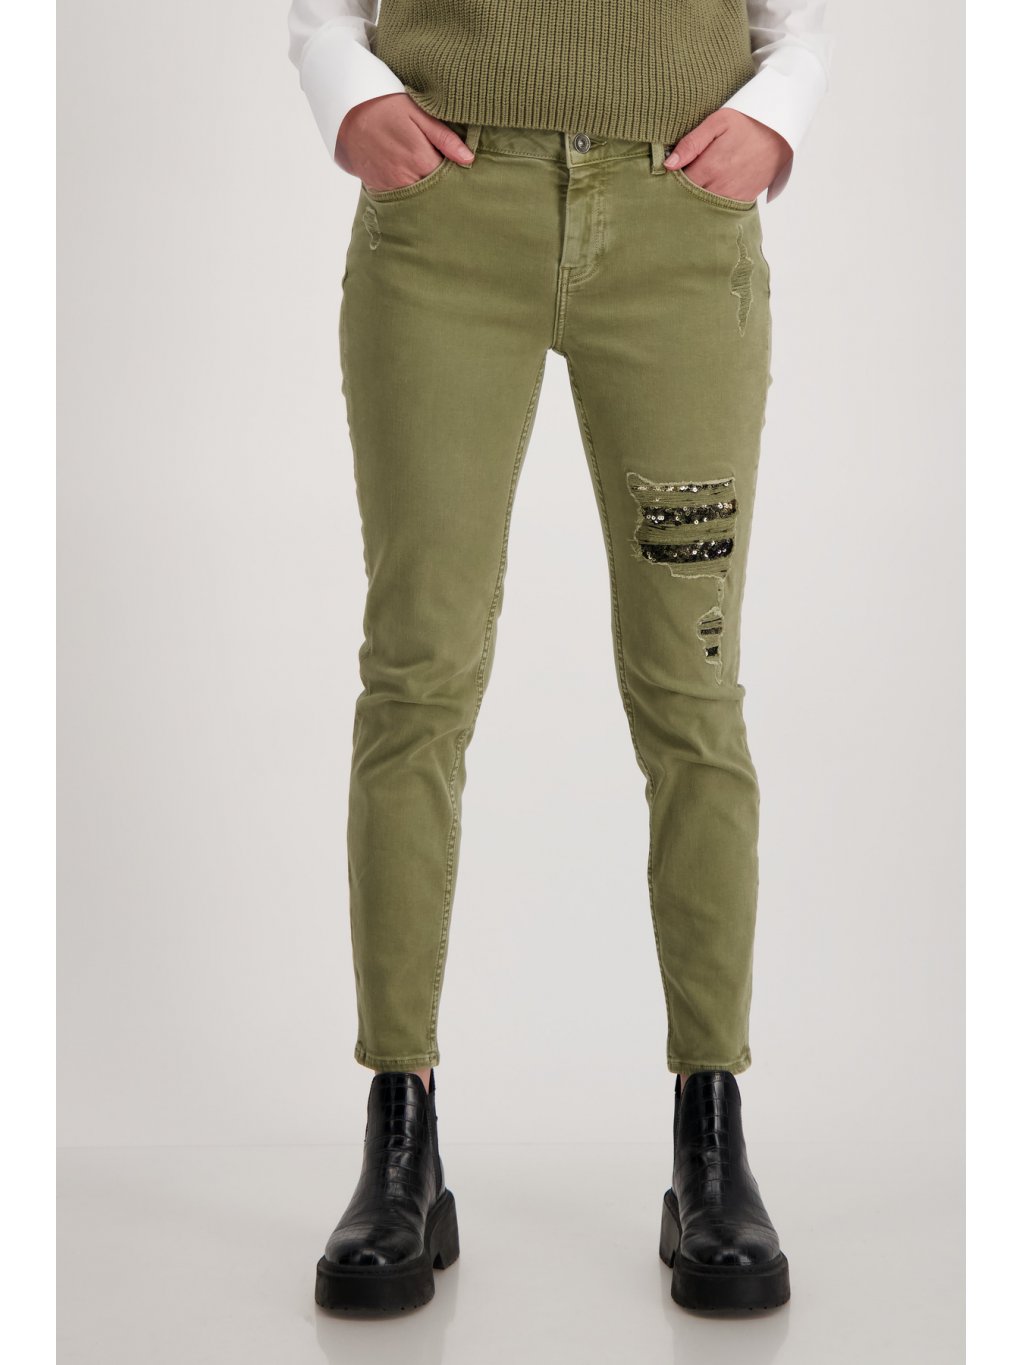 Kalhoty Monari 6132 zelené džíny s efekty